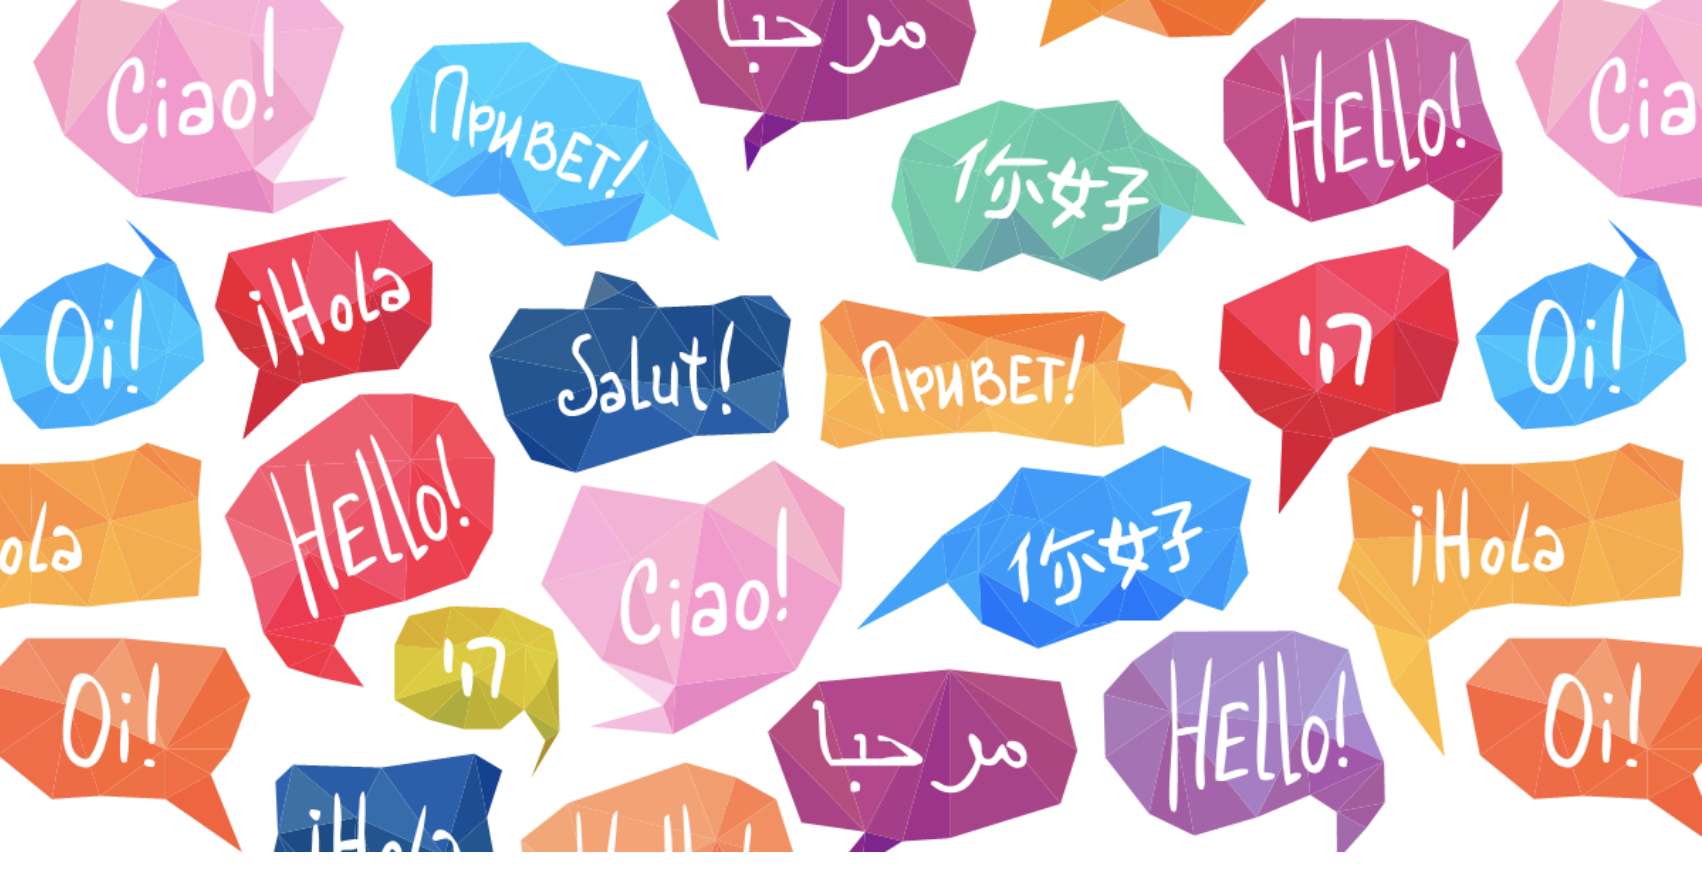 Люди разговаривают на разных языках